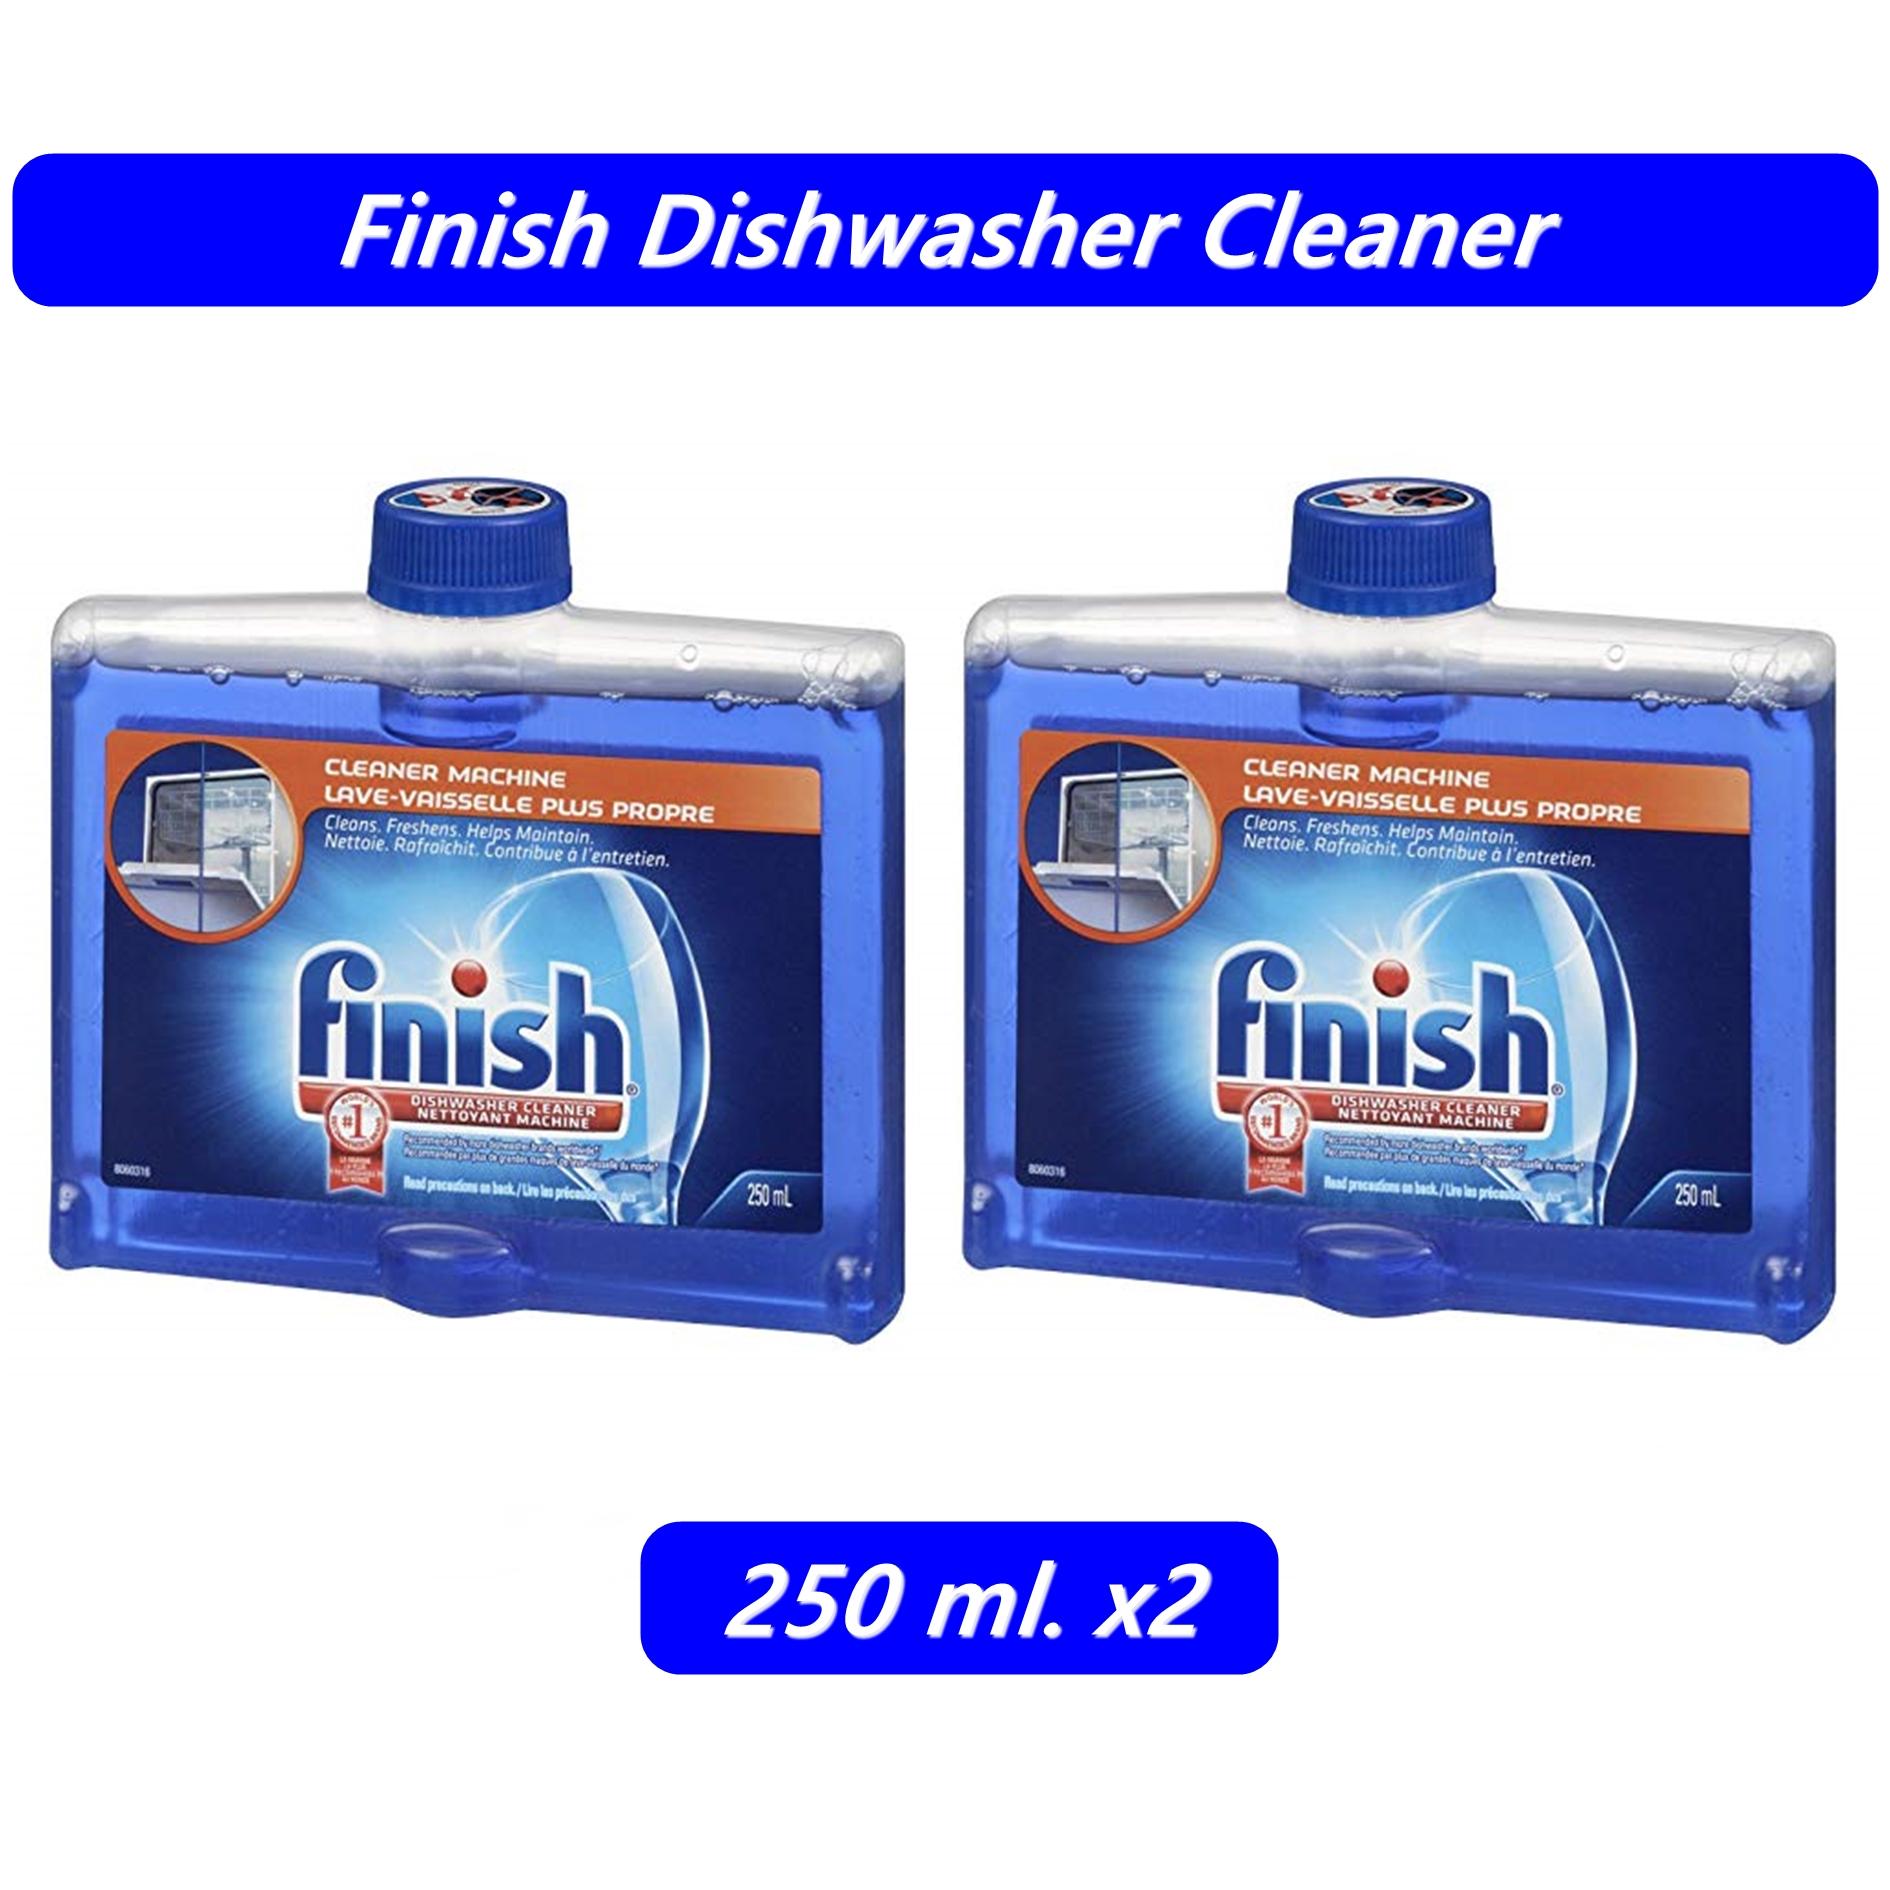 finish cleaner machine น้ำยาล้างทำความสะอาดเครื่องล้างจาน ผลิตภัณฑ์ล้างจาน สำหรับเครื่องล้างจานอัตโนมัติ